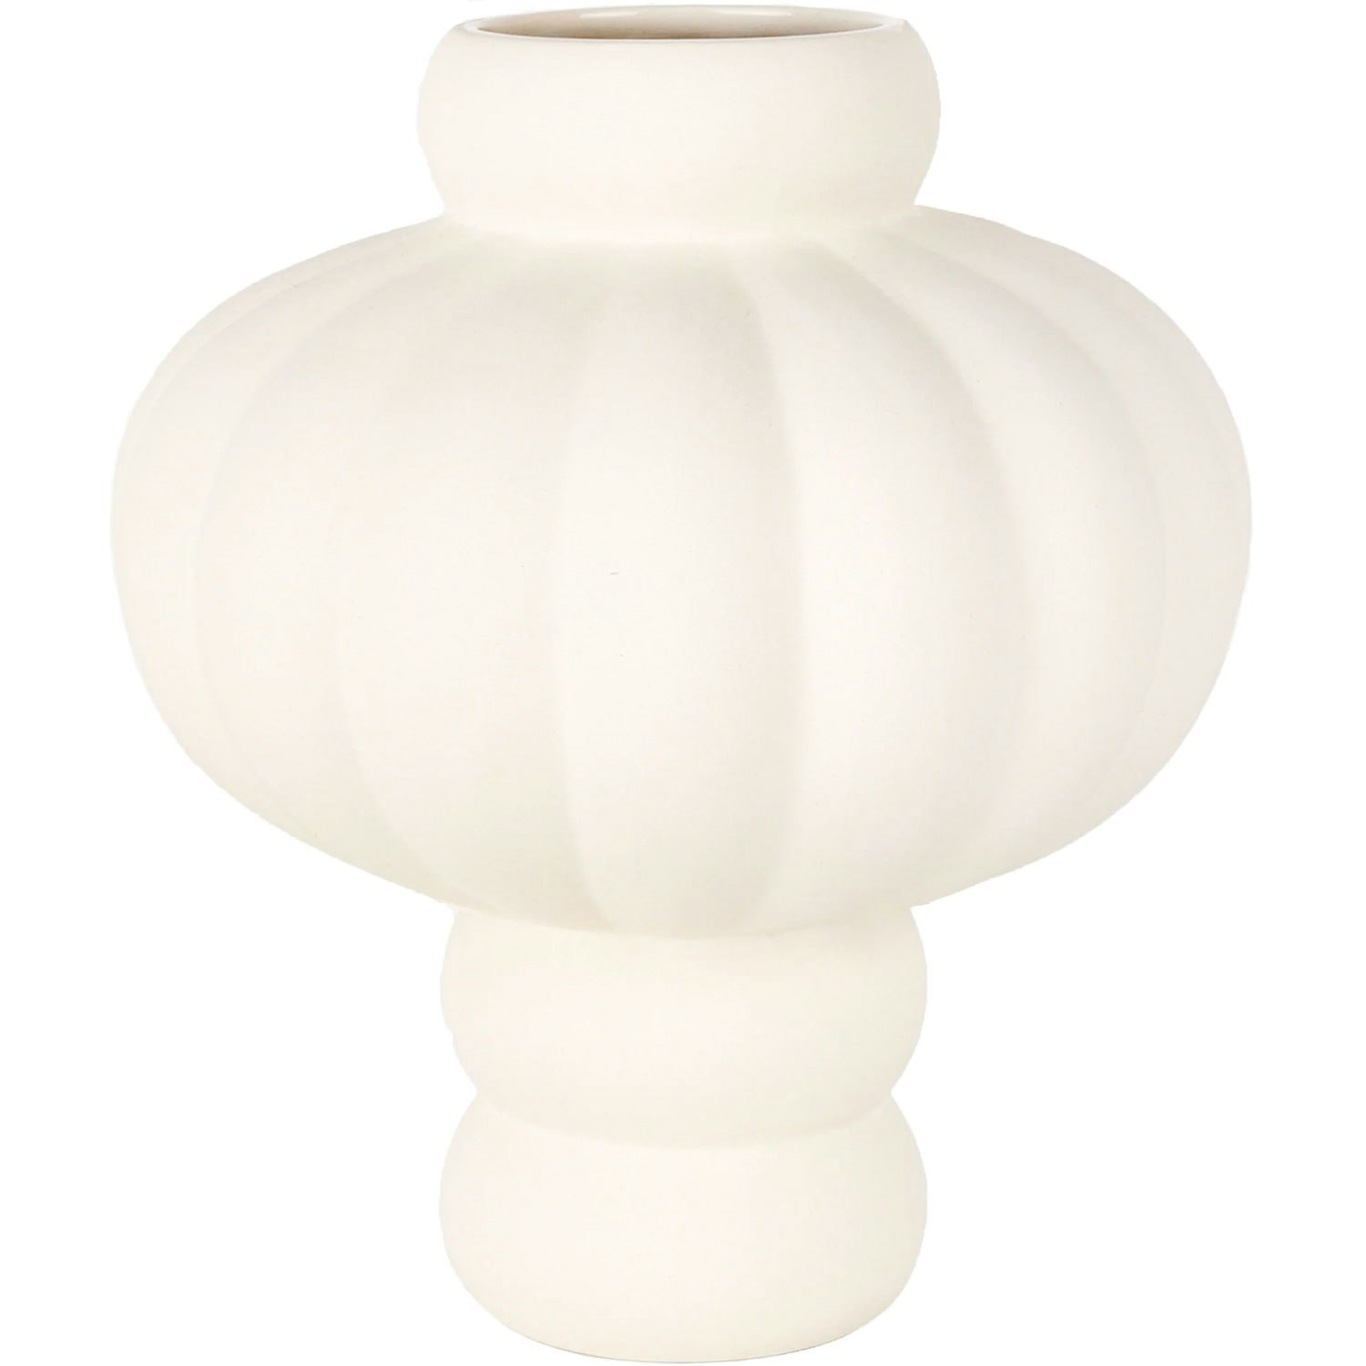 Balloon 03 Vase 40 cm, Raw White